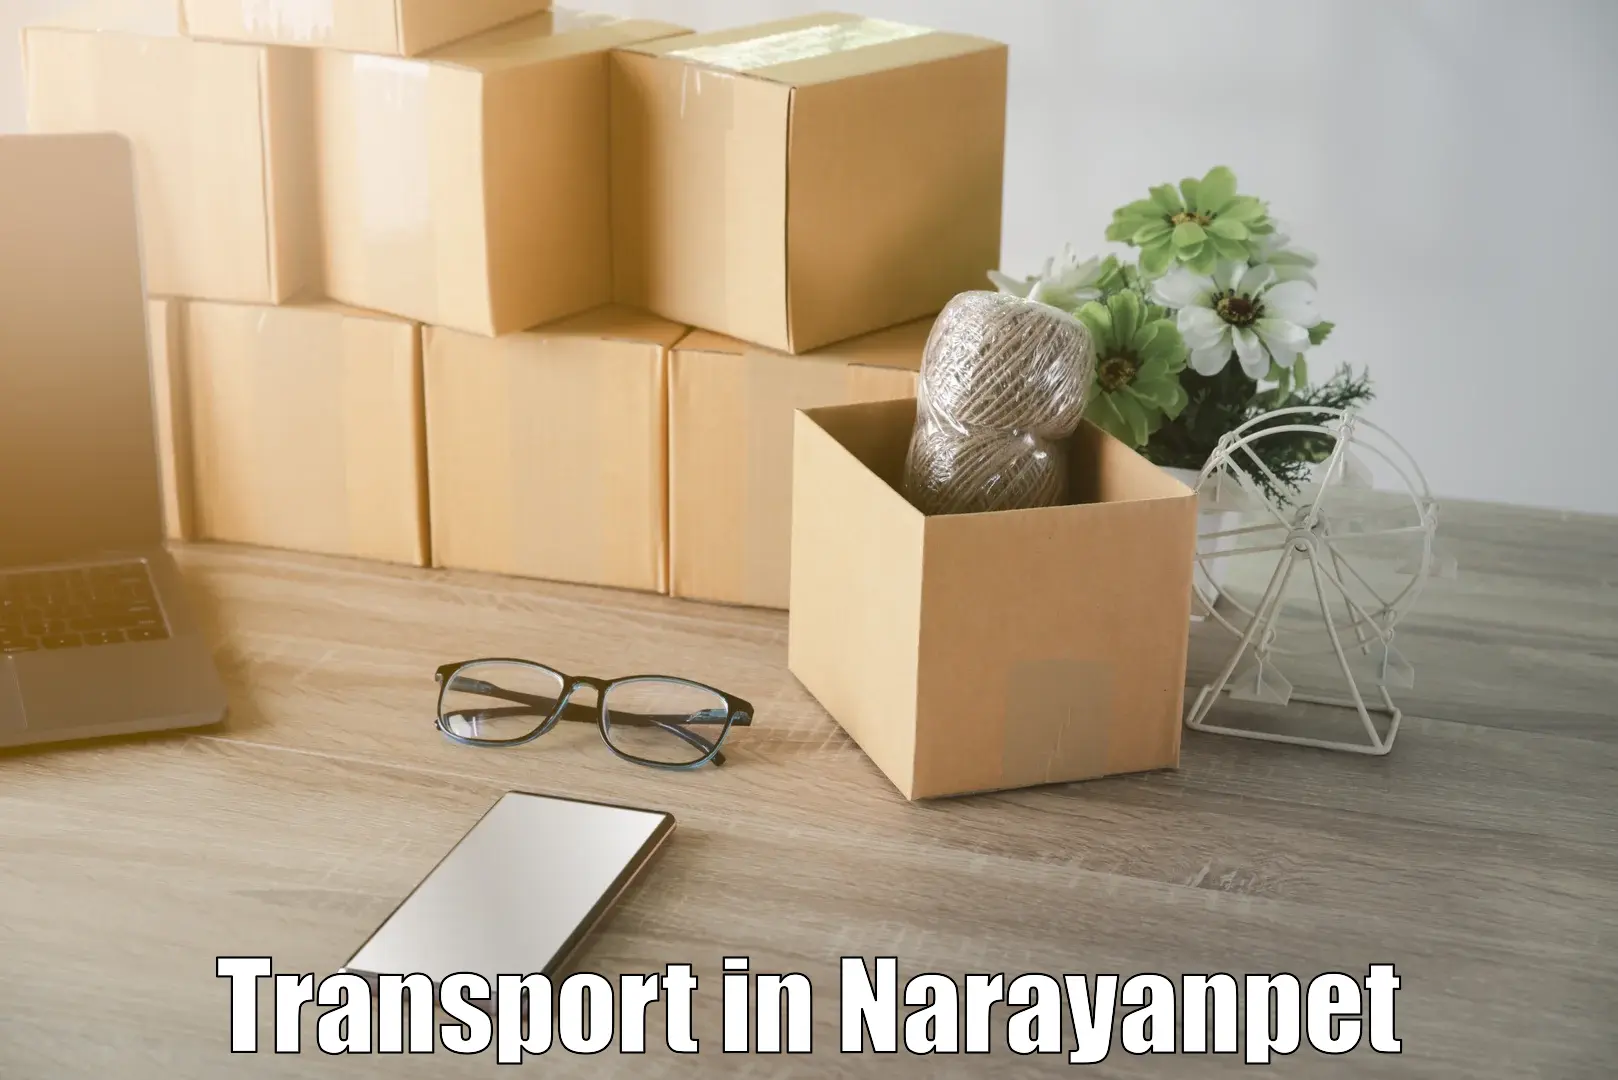 Furniture transport service in Narayanpet